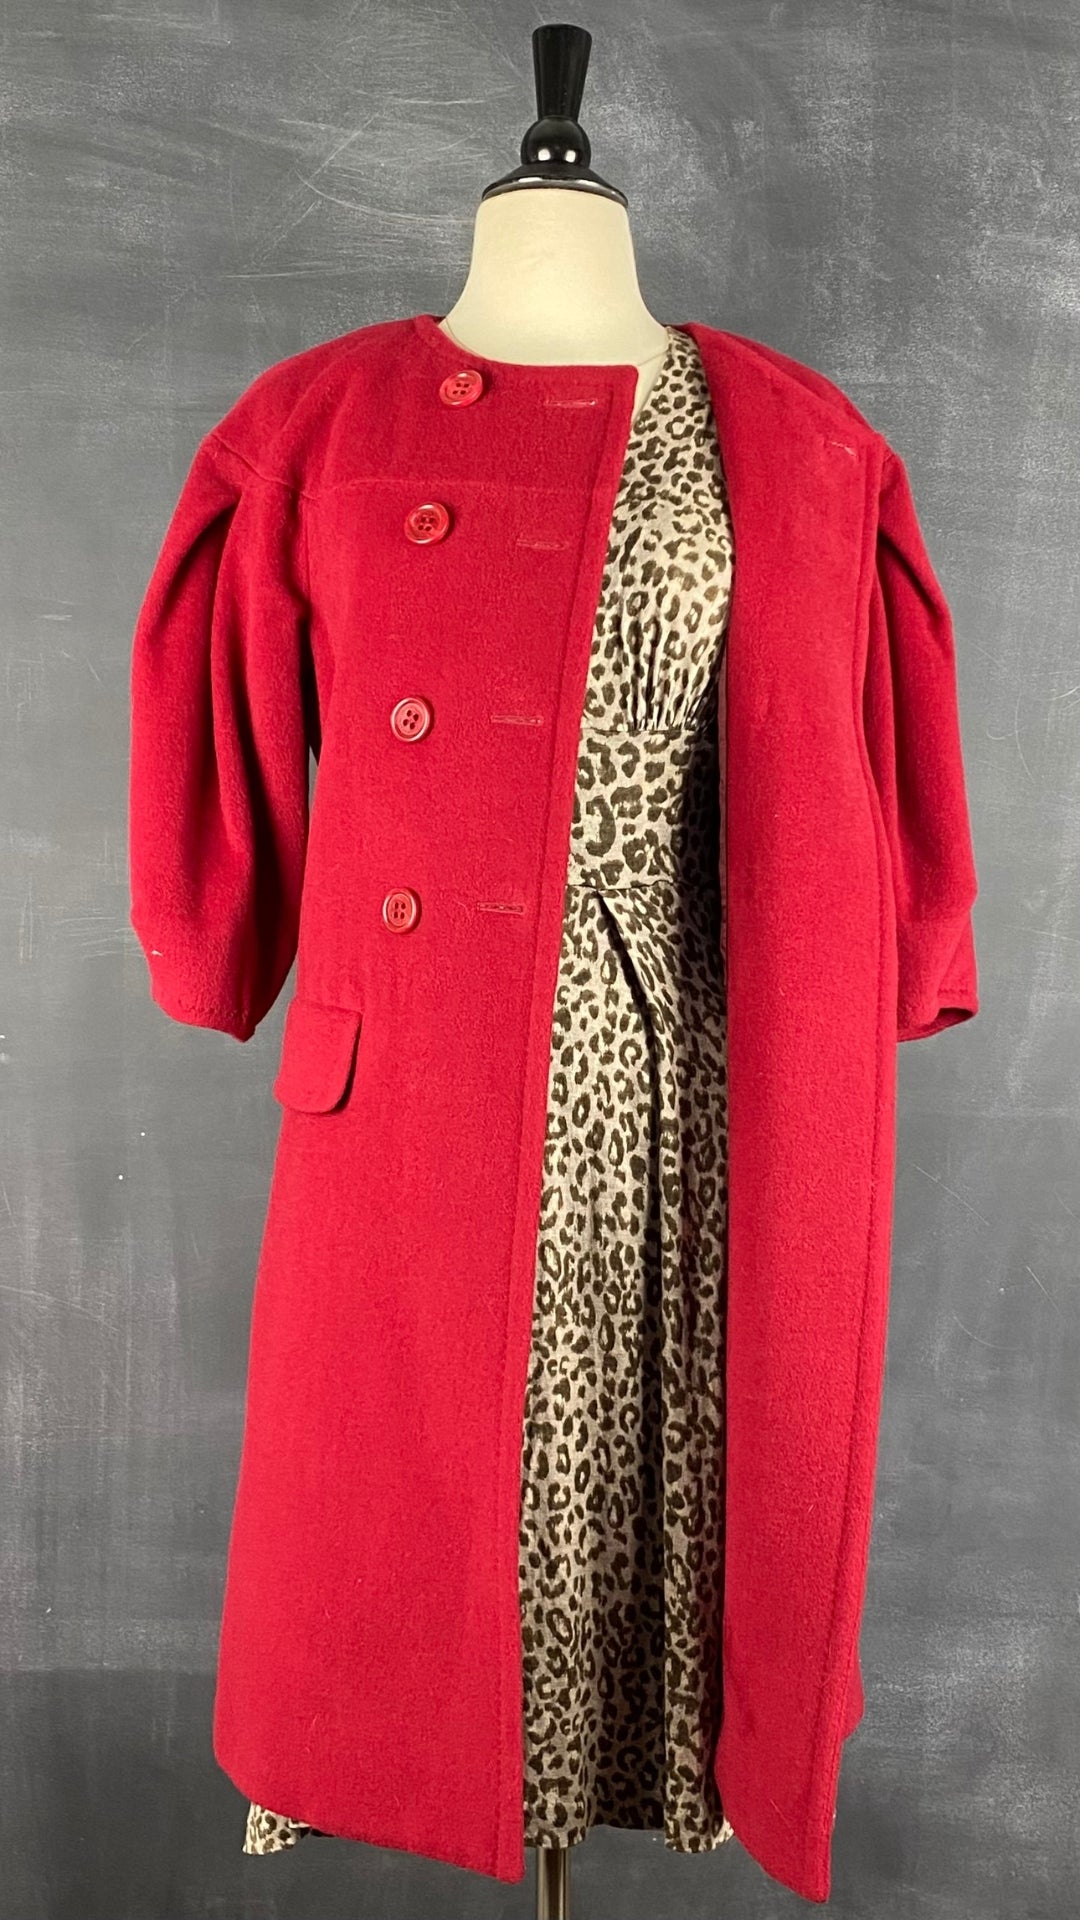 Robe en tricot fin et doux à motif léopard Banana Republic, taille xs-s. Vue de l'agencement avec le manteau rouge en laine à manches ballon.